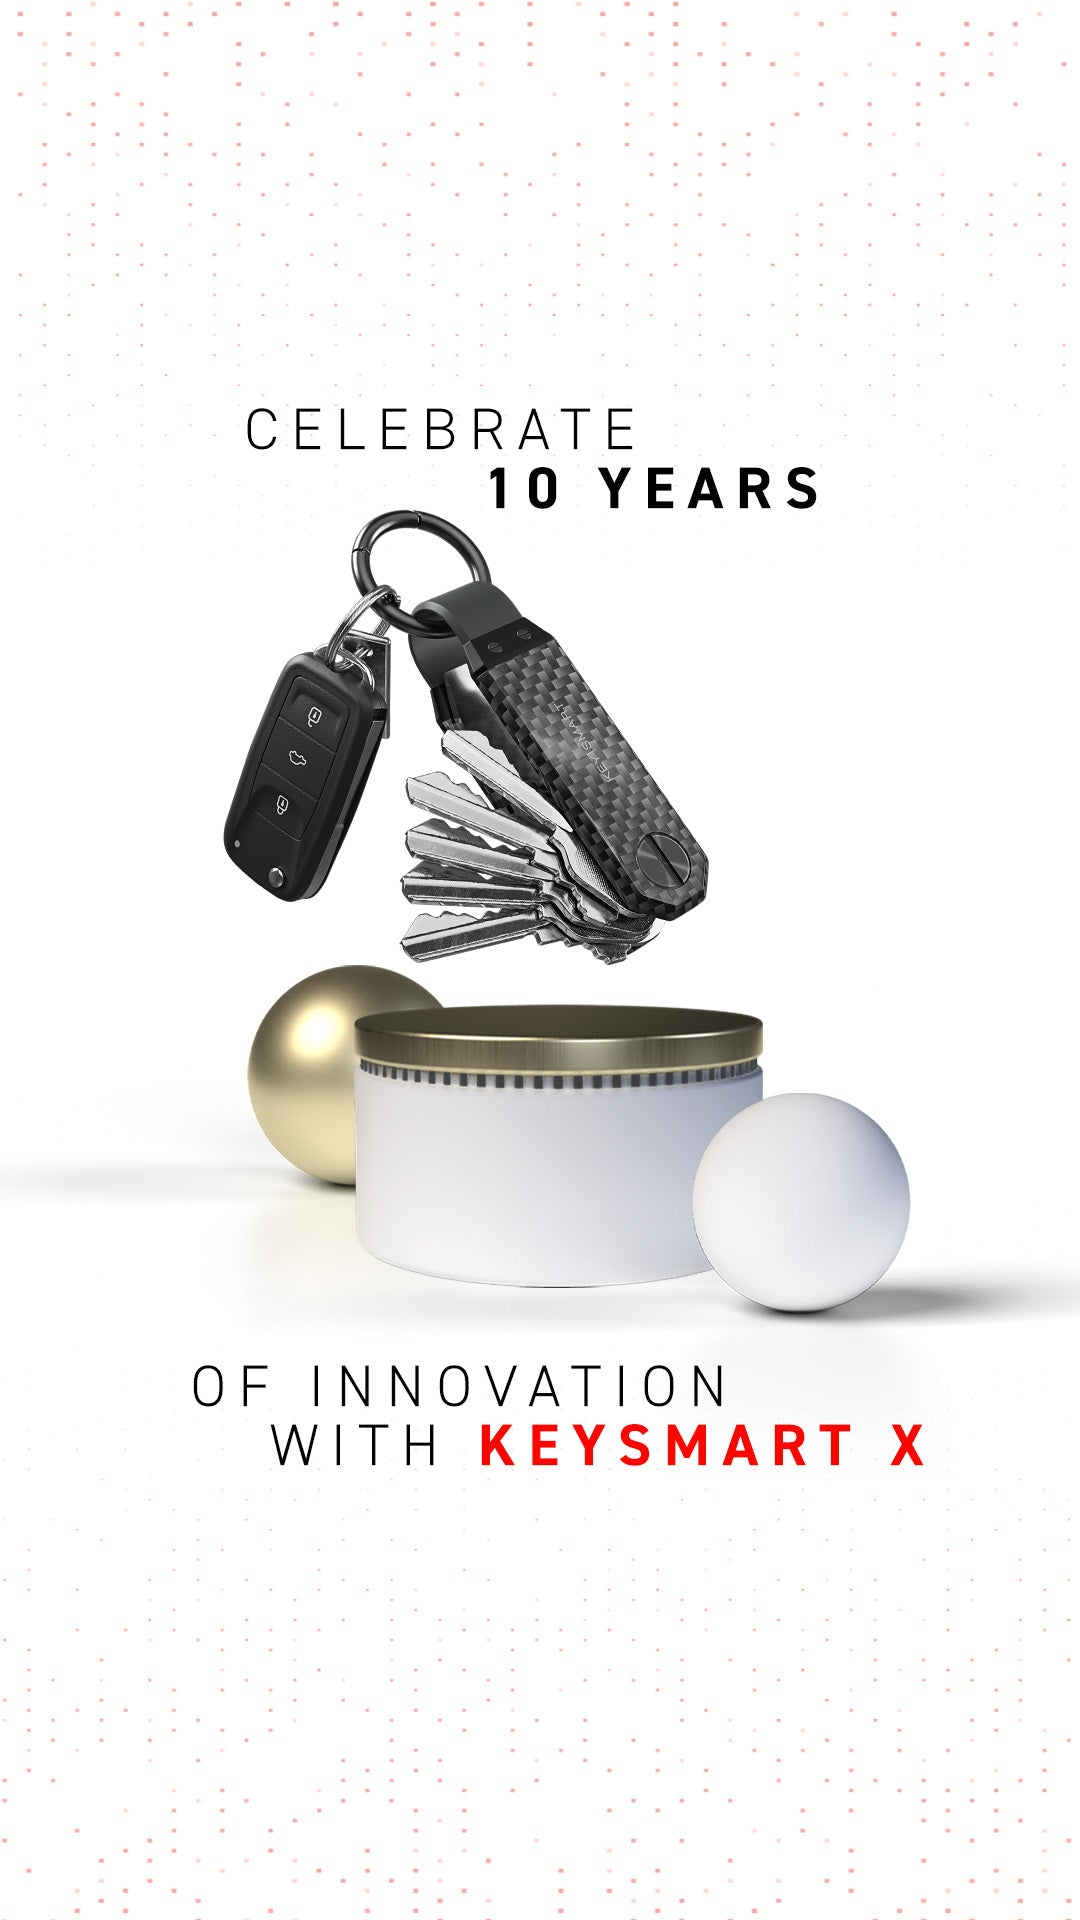 KeySmart - das Schlüssel-Gadget - Smart Tech News